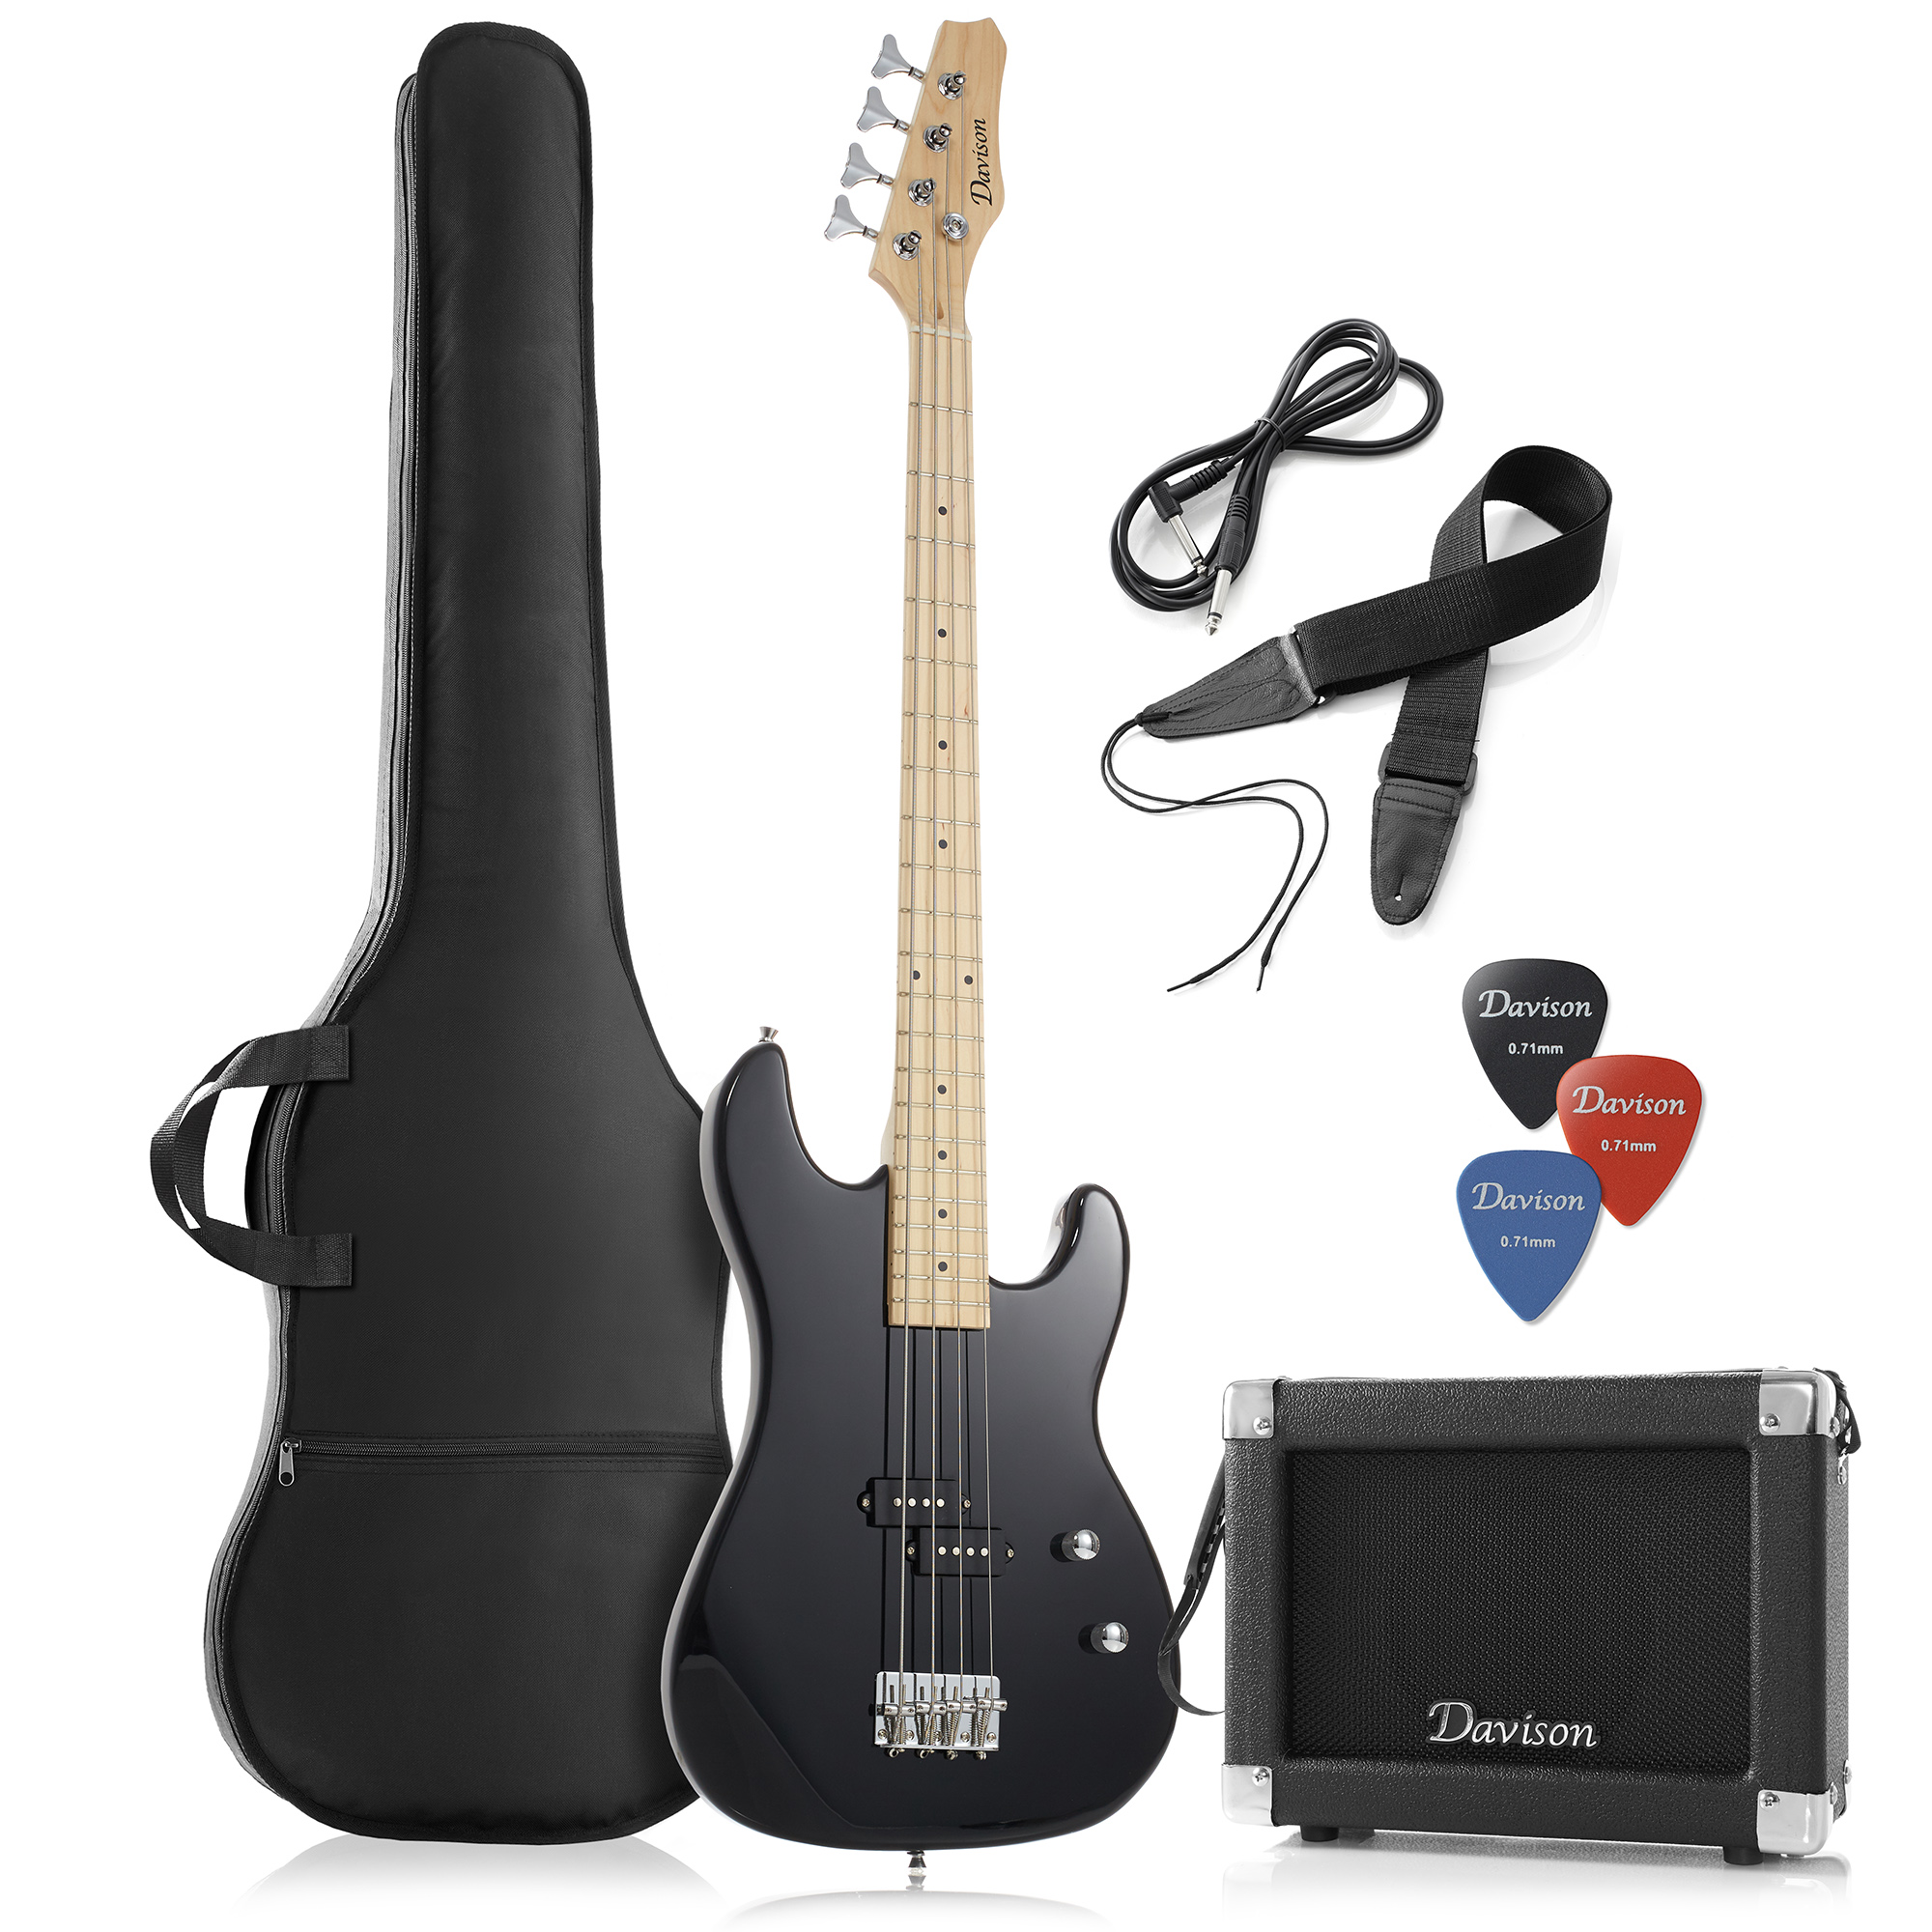 Davison Guitars Full Size Electric Bass Guitar w/ 15-Watt Amp, Black - Right Handed Beginner Kit